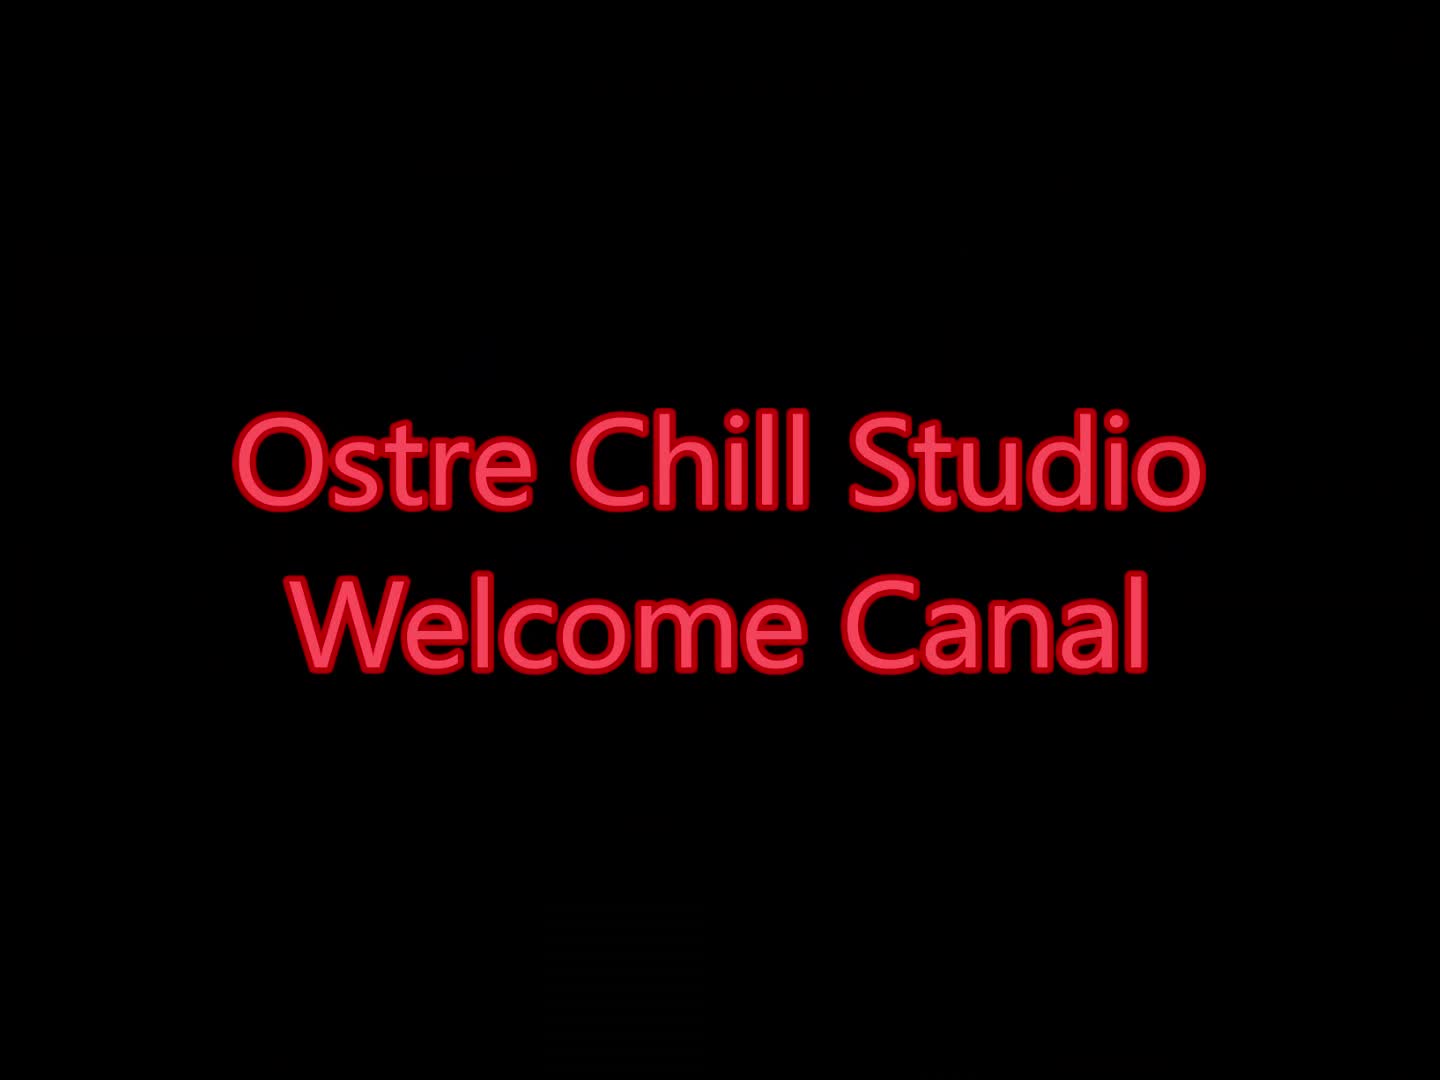 OstreChillStudio Welcome